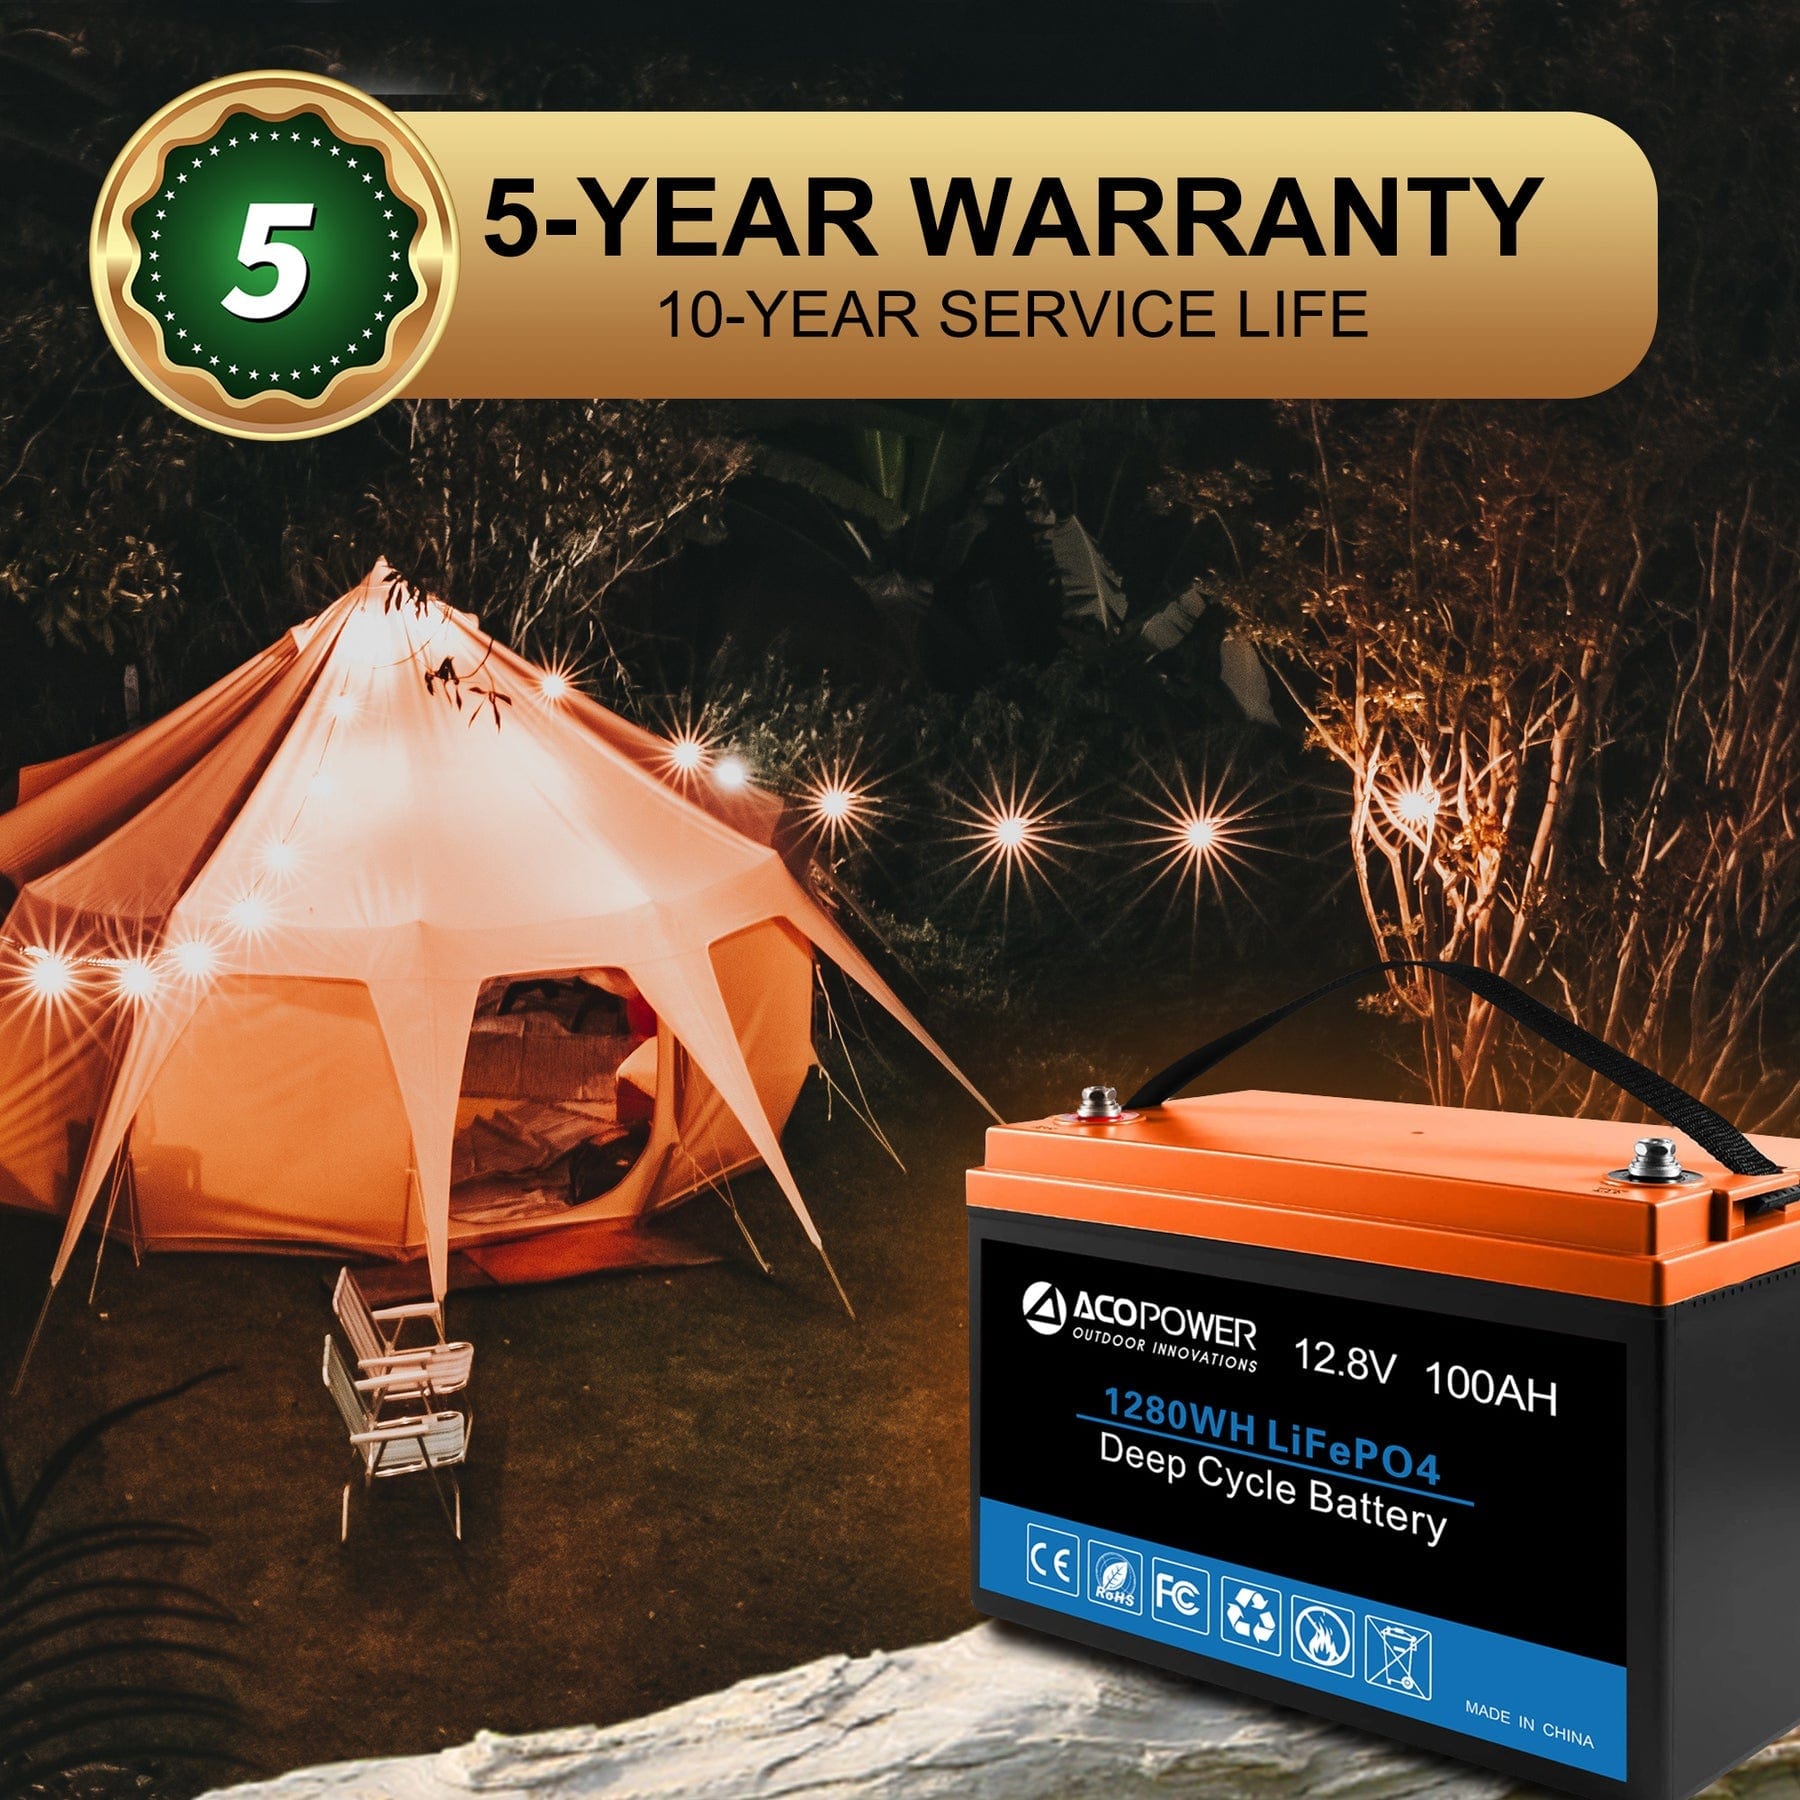 Batterie AGM 100 Ah Compact Low pour camping-car et services